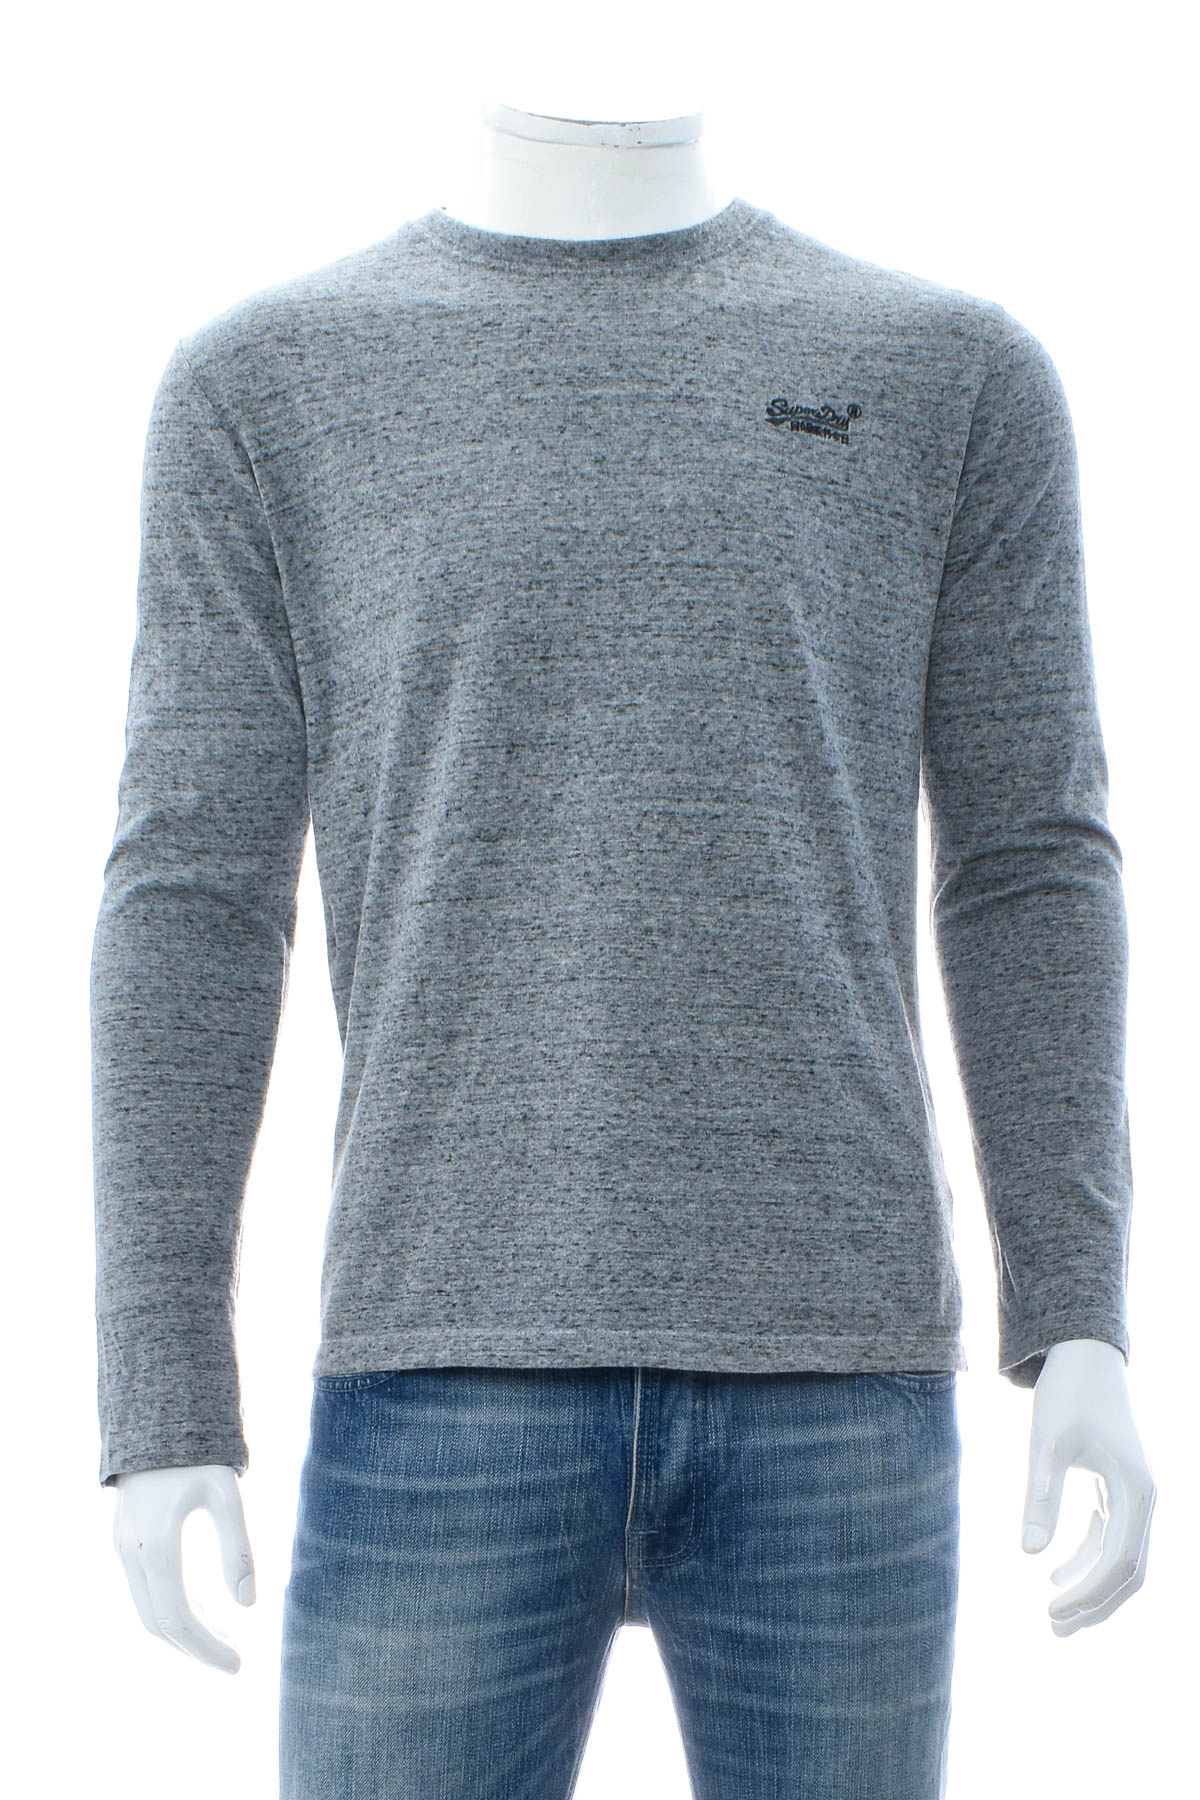 Men's sweater - SuperDry - 0